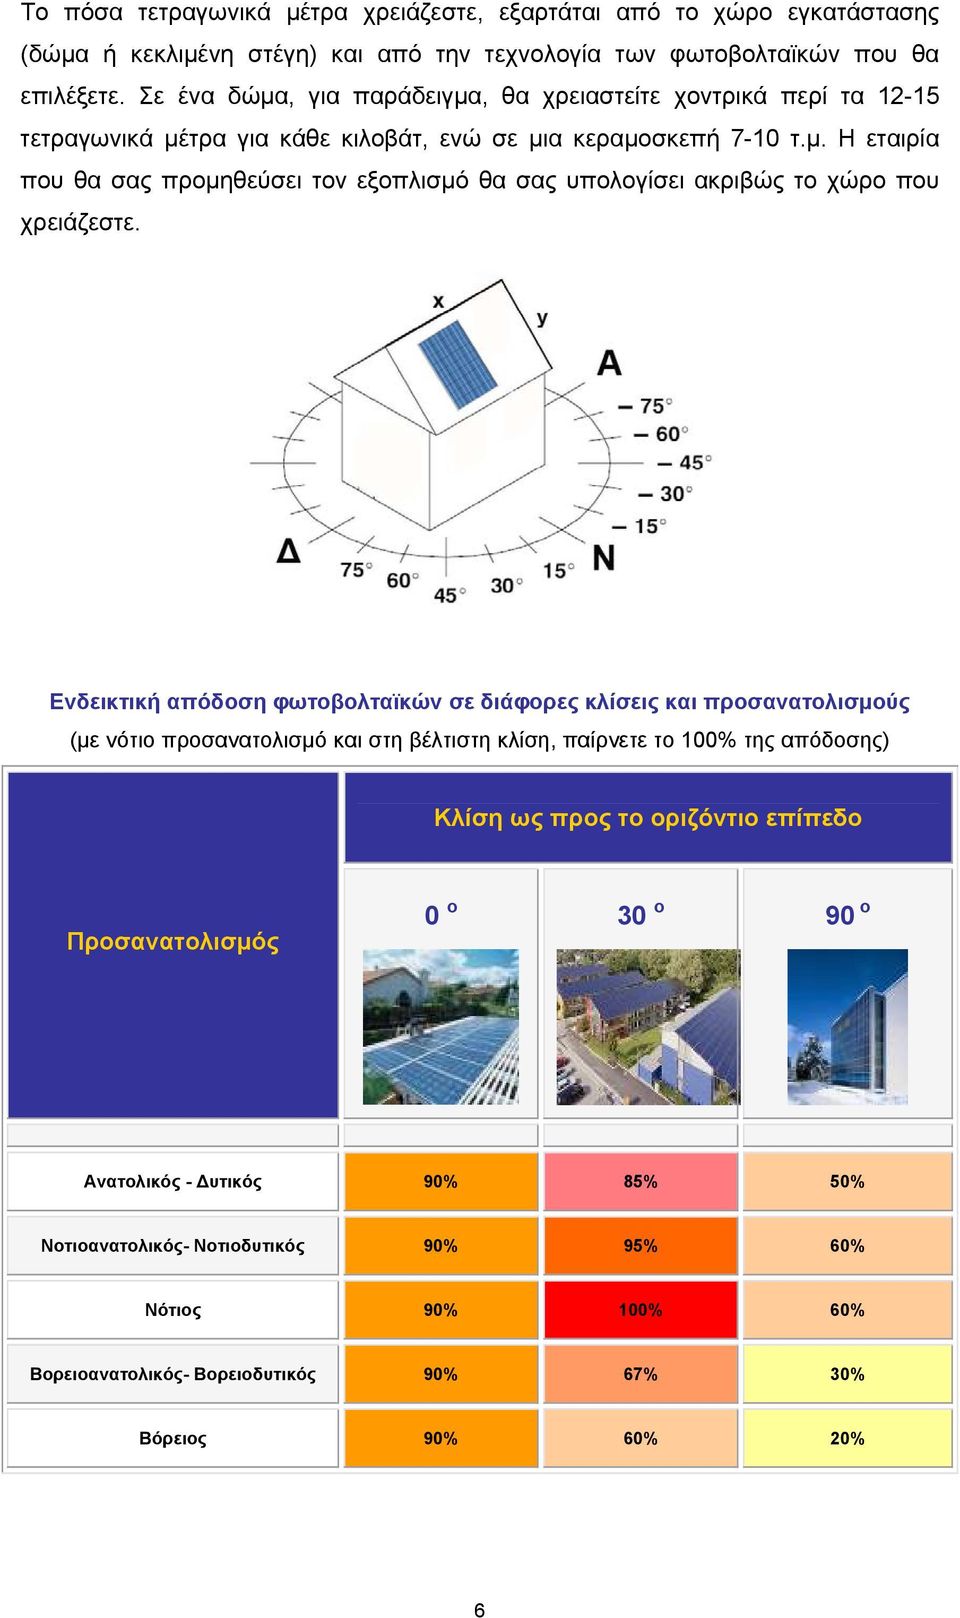 Ενδεικτική απόδοση φωτοβολταϊκών σε διάφορες κλίσεις και προσανατολισμούς (με νότιο προσανατολισμό και στη βέλτιστη κλίση, παίρνετε το 100% της απόδοσης) Κλίση ως προς το οριζόντιο επίπεδο